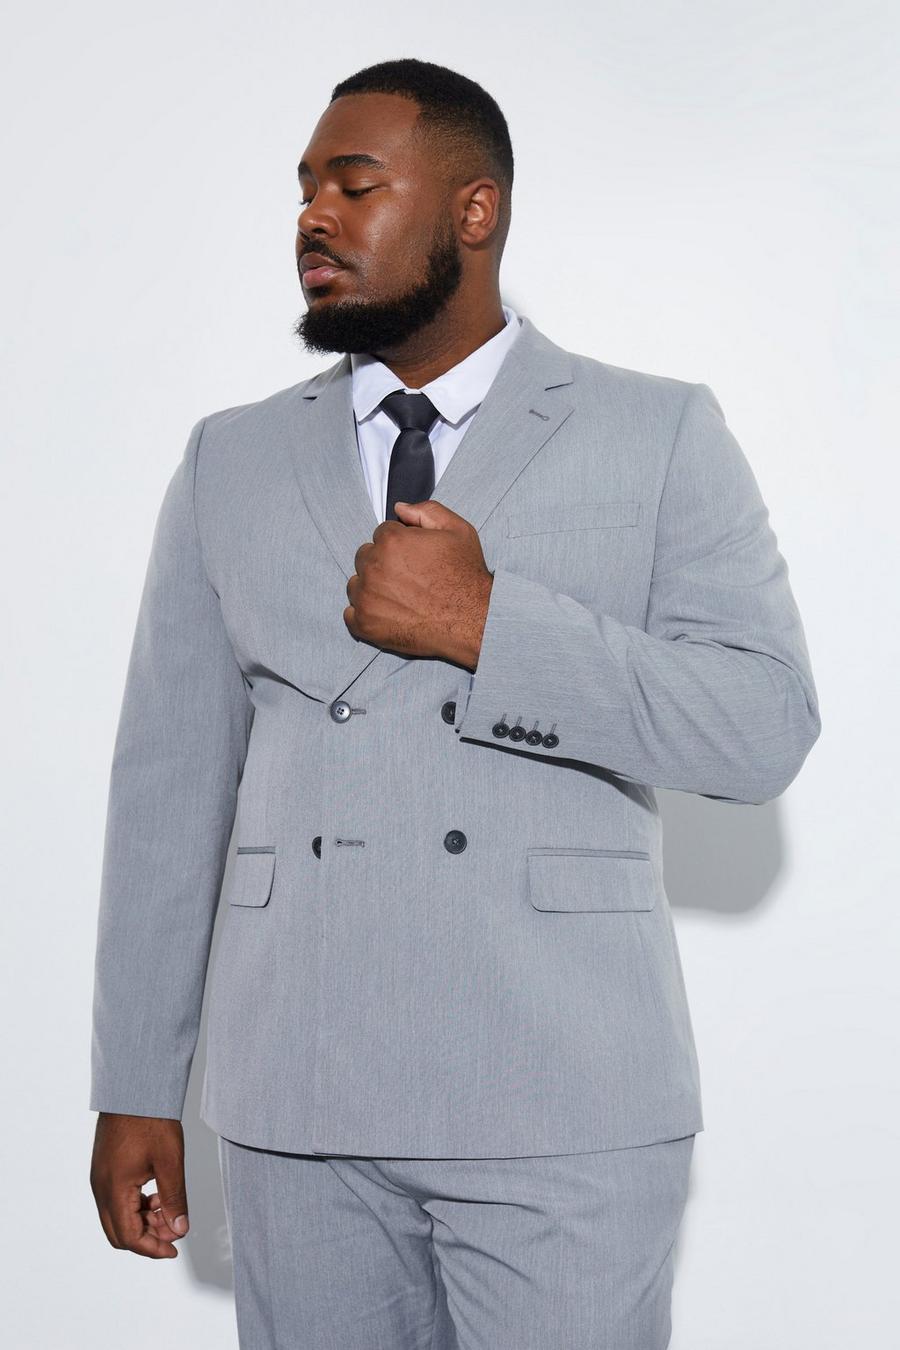 אפור gris ז'קט חליפה בגזרה צרה עם דשים כפולים, מידות גדולות